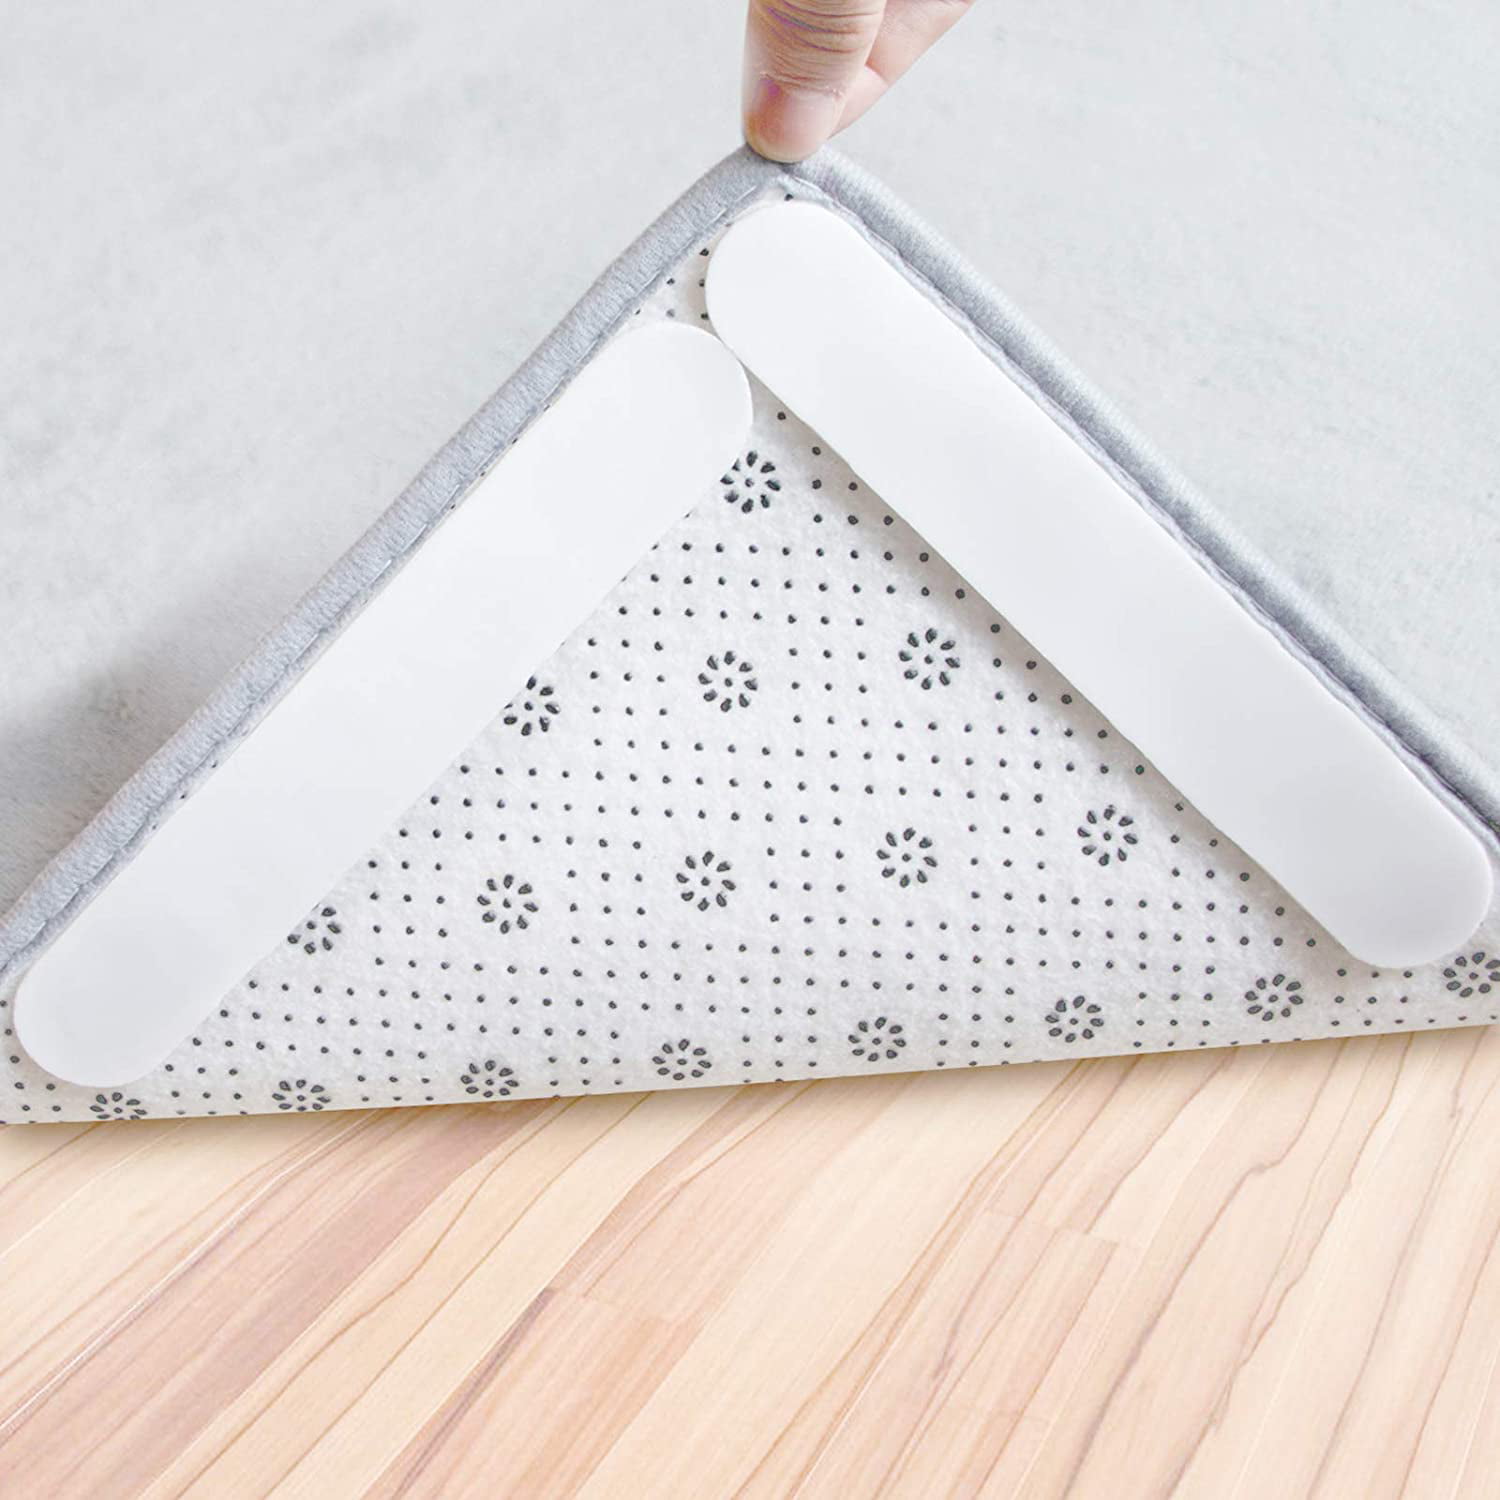 16 Mat Grips Non-Slip Rug Gripper Carpet Reusable Tape All Floor Types Anti Skid 